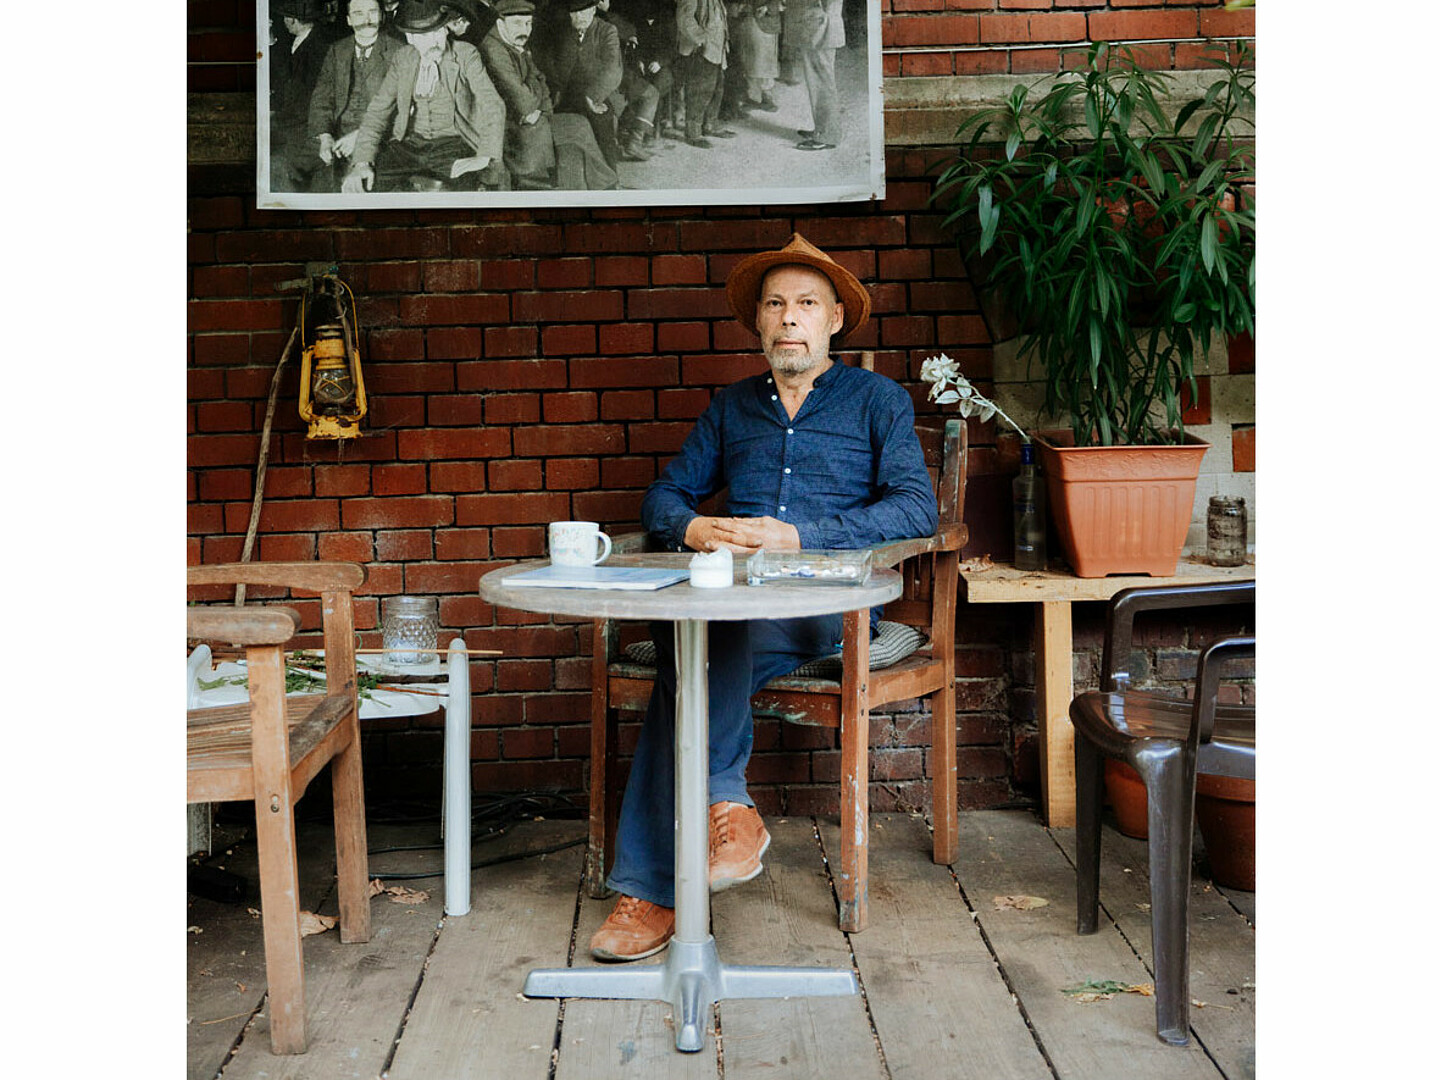 Frontaufnahmen von dem Künstler Thomas Hendriksson. Er sitzt an einem Tisch, darauf liegen verschiedene Sachen. Hinter ihm hängt ein schwarz-weißes Bild